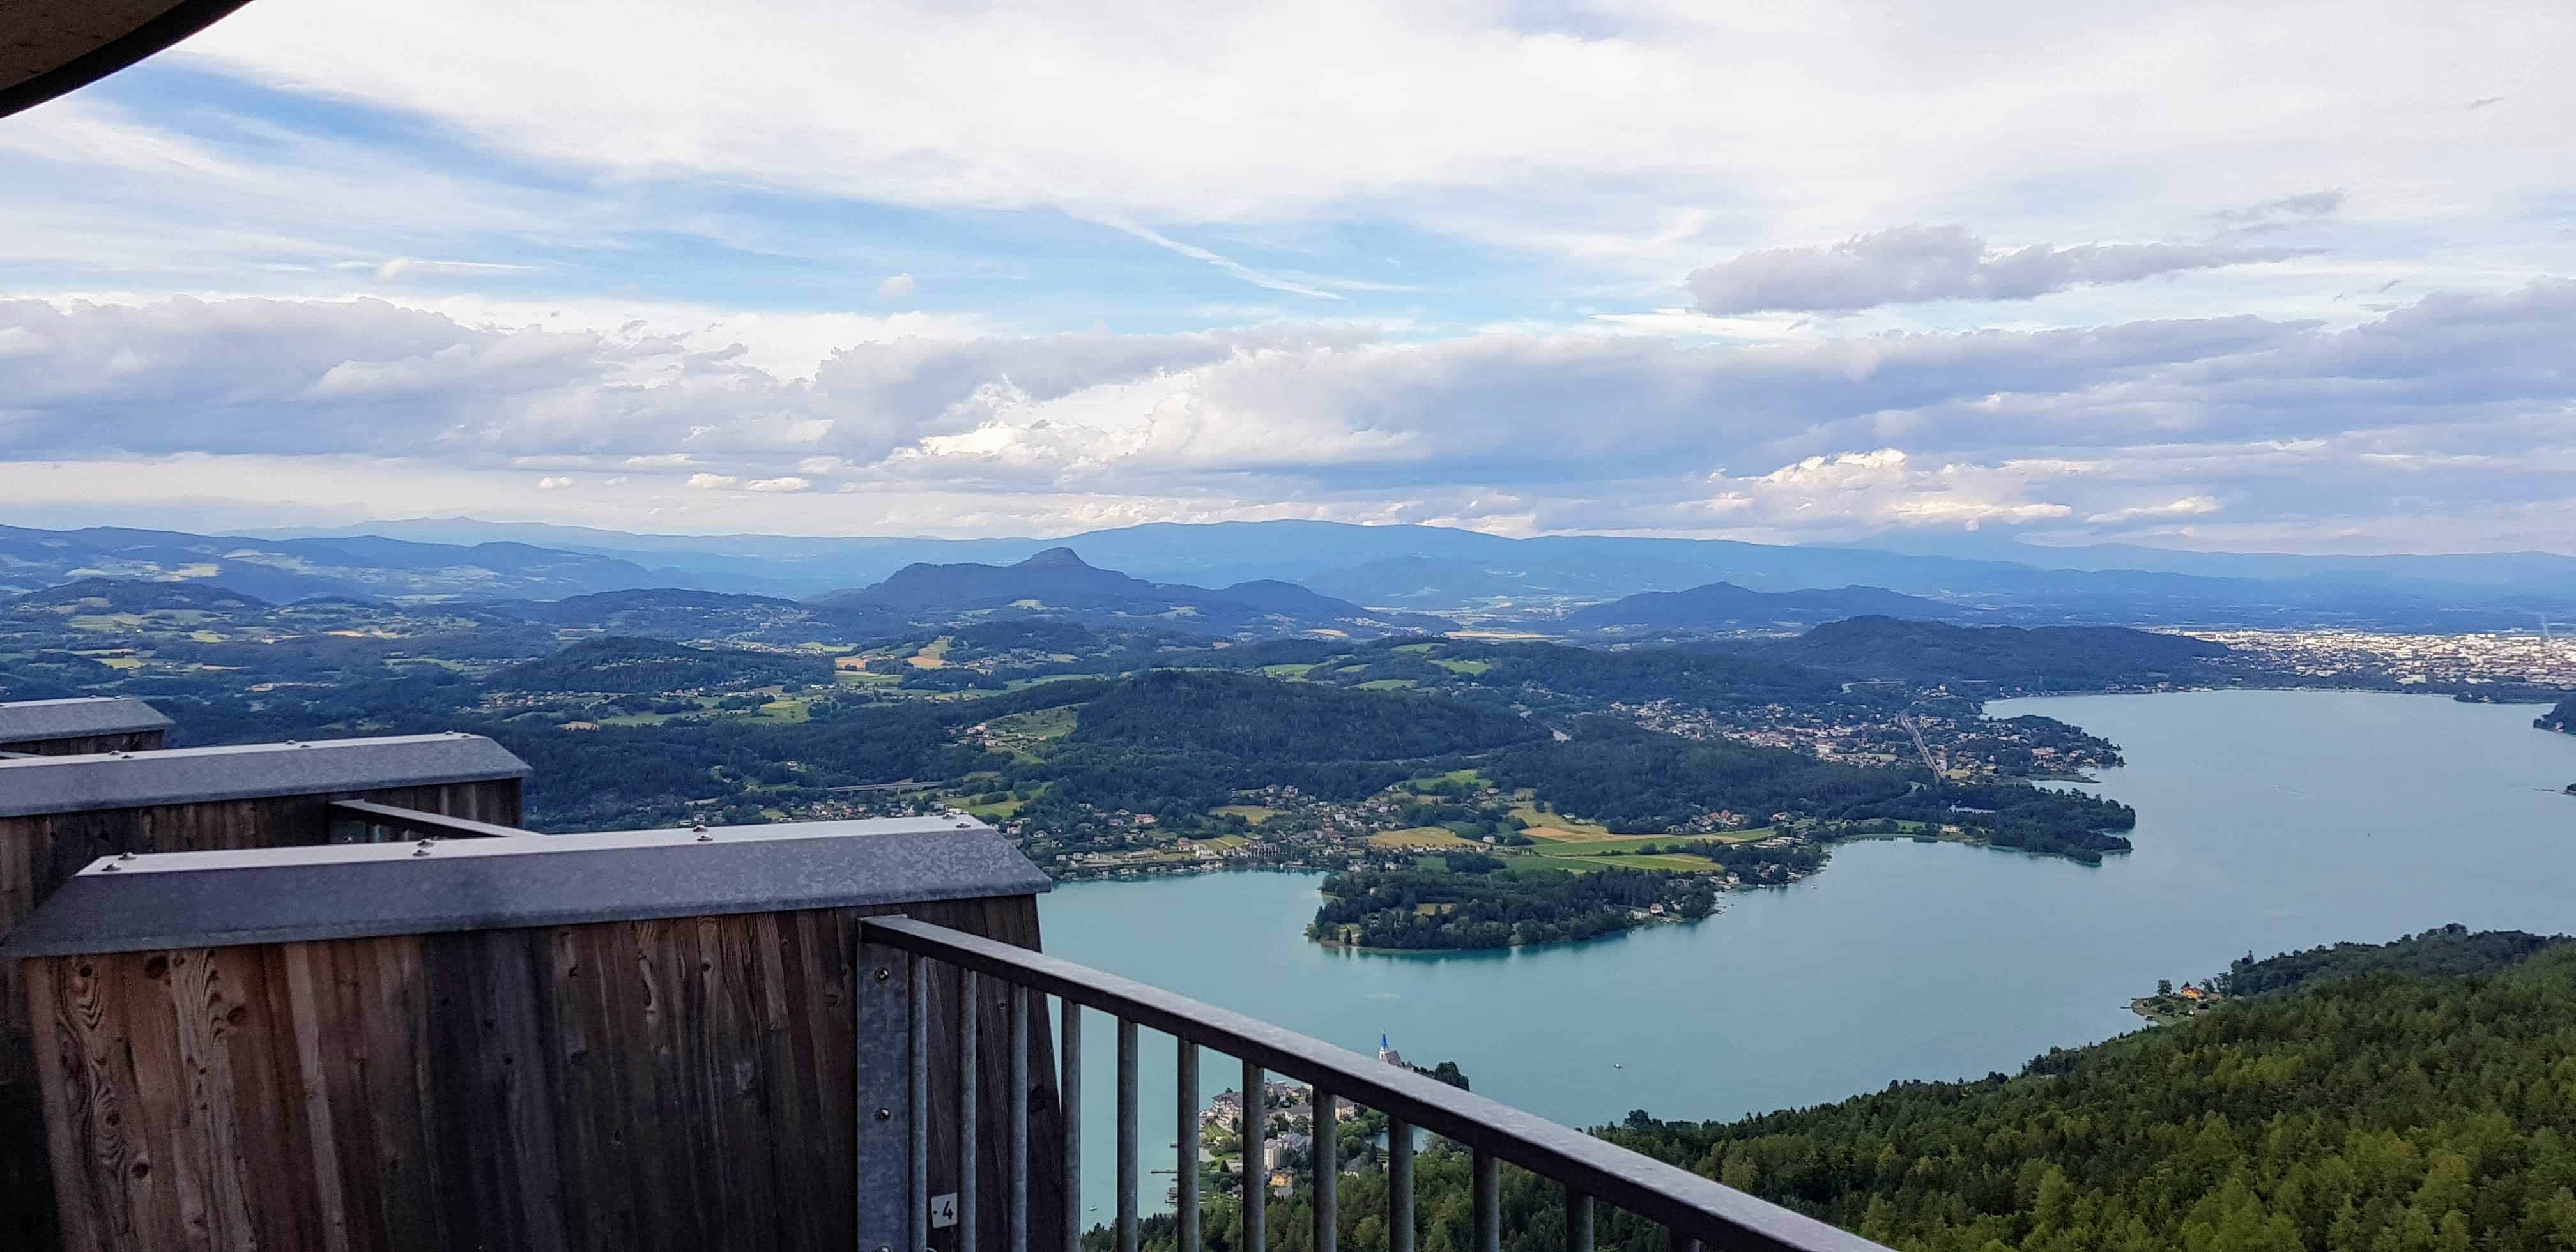 Schöner Panoramablick am Aussichtsturm Pyramidenkogel in Keutschach am Wörthersee in Kärnten. Blick auf Kärntner Berge.